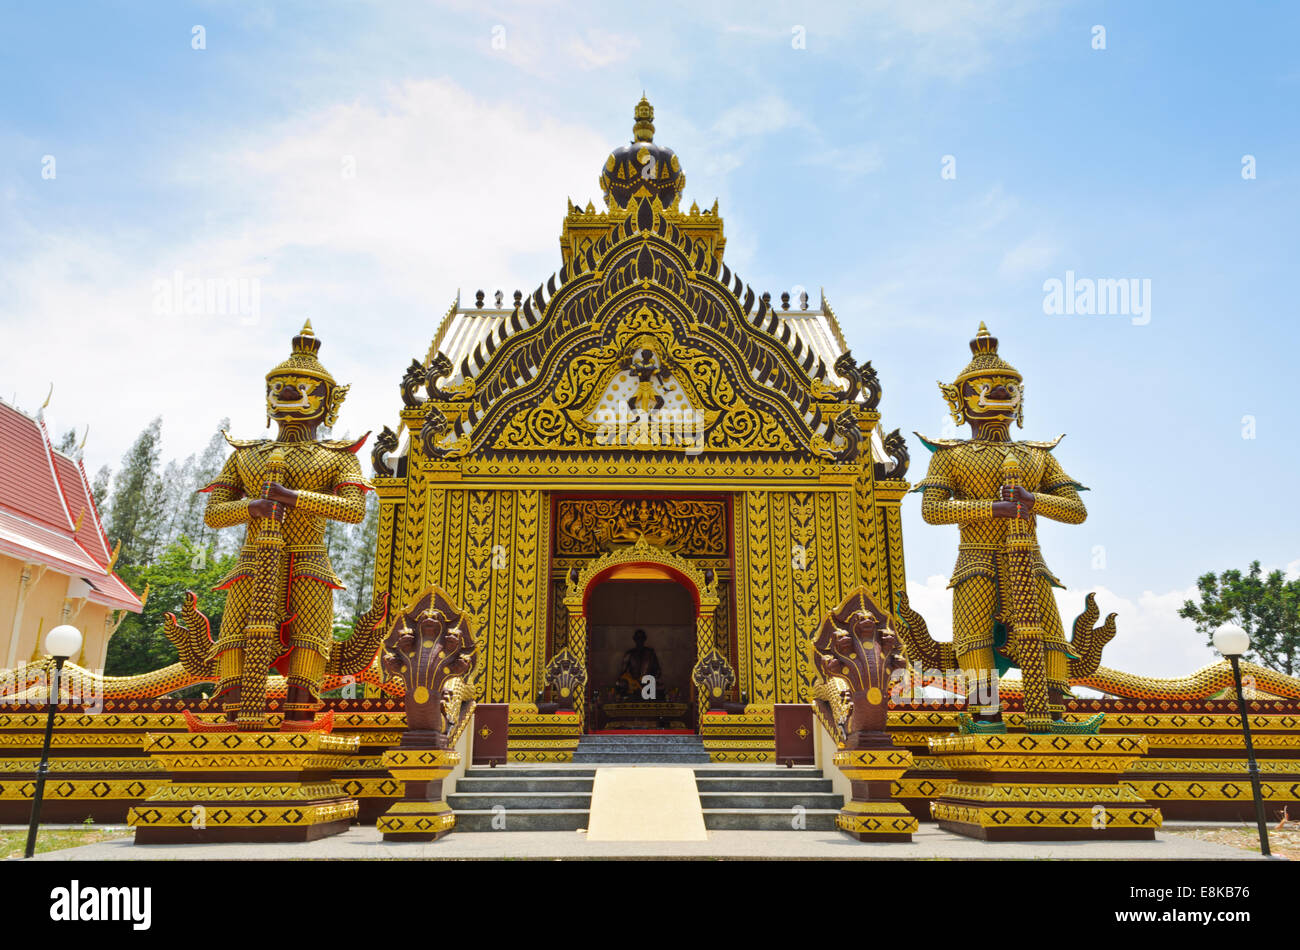 Chapelle du temple thaïlandais sont des attractions touristiques à Hua Hin religieux de la province de Prachuap Khiri Khan, Thaïlande Banque D'Images